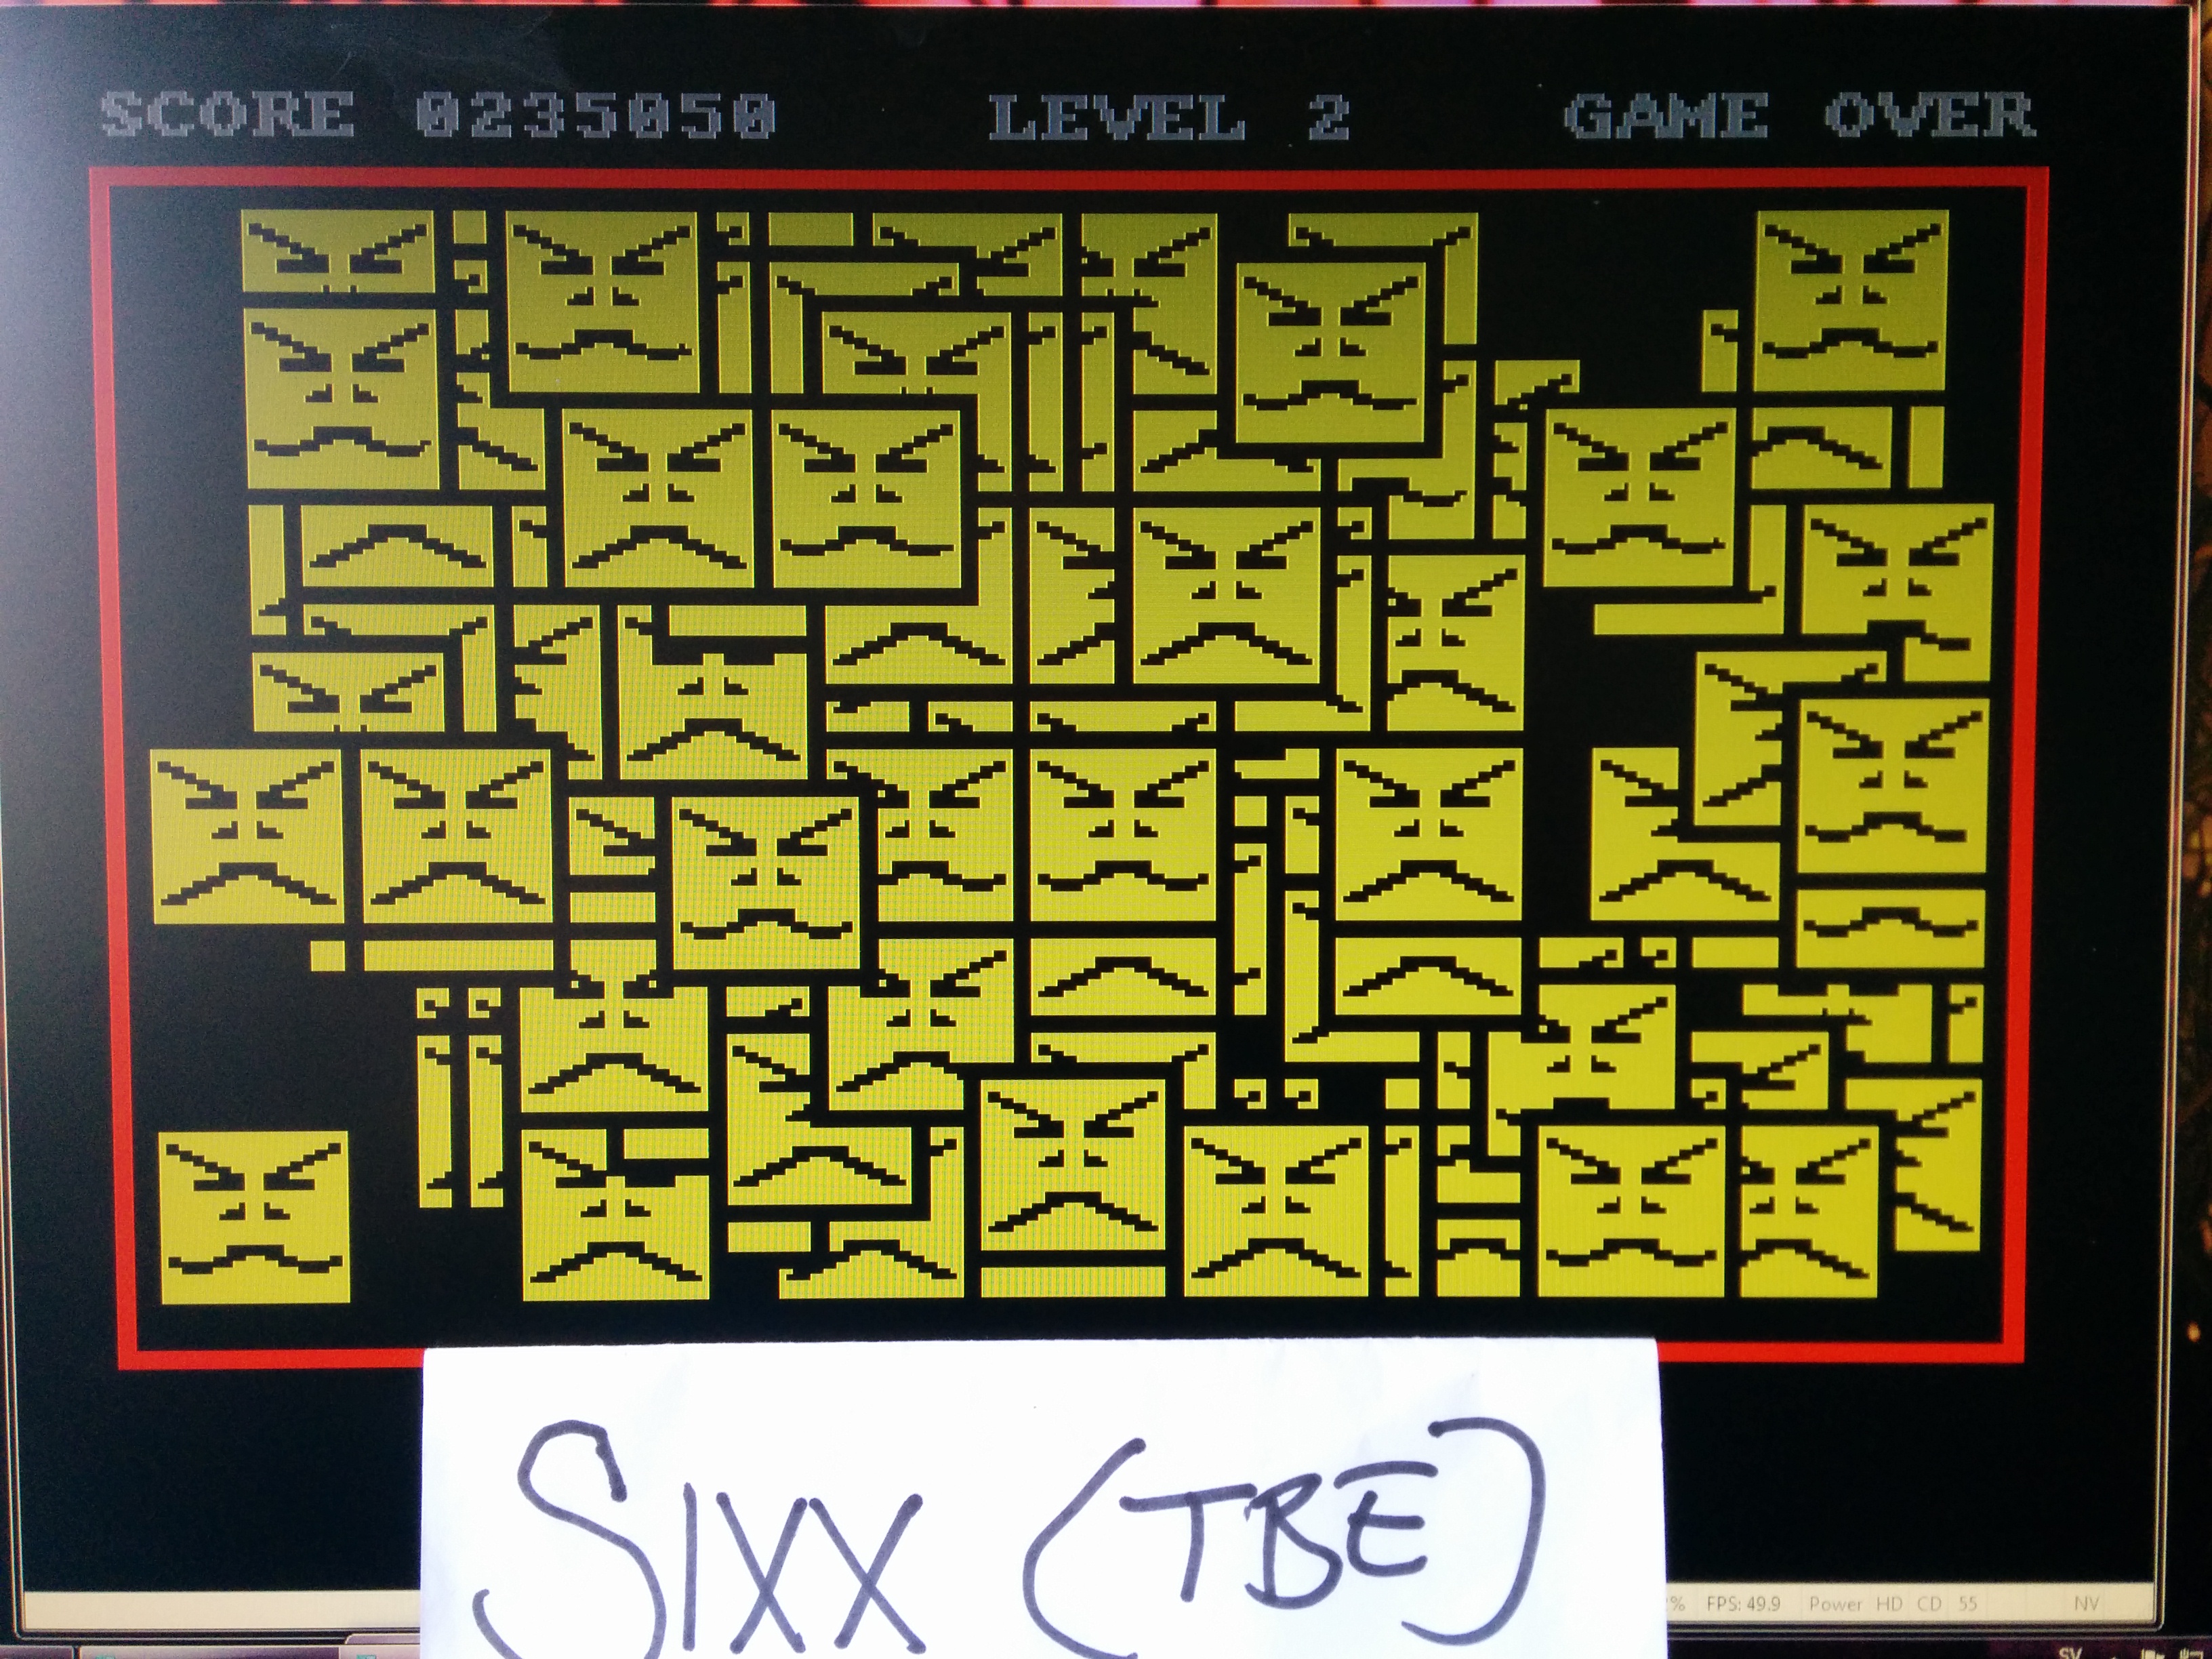 Sixx: Drelbs (Amiga Emulated) 235,050 points on 2014-06-05 10:40:03